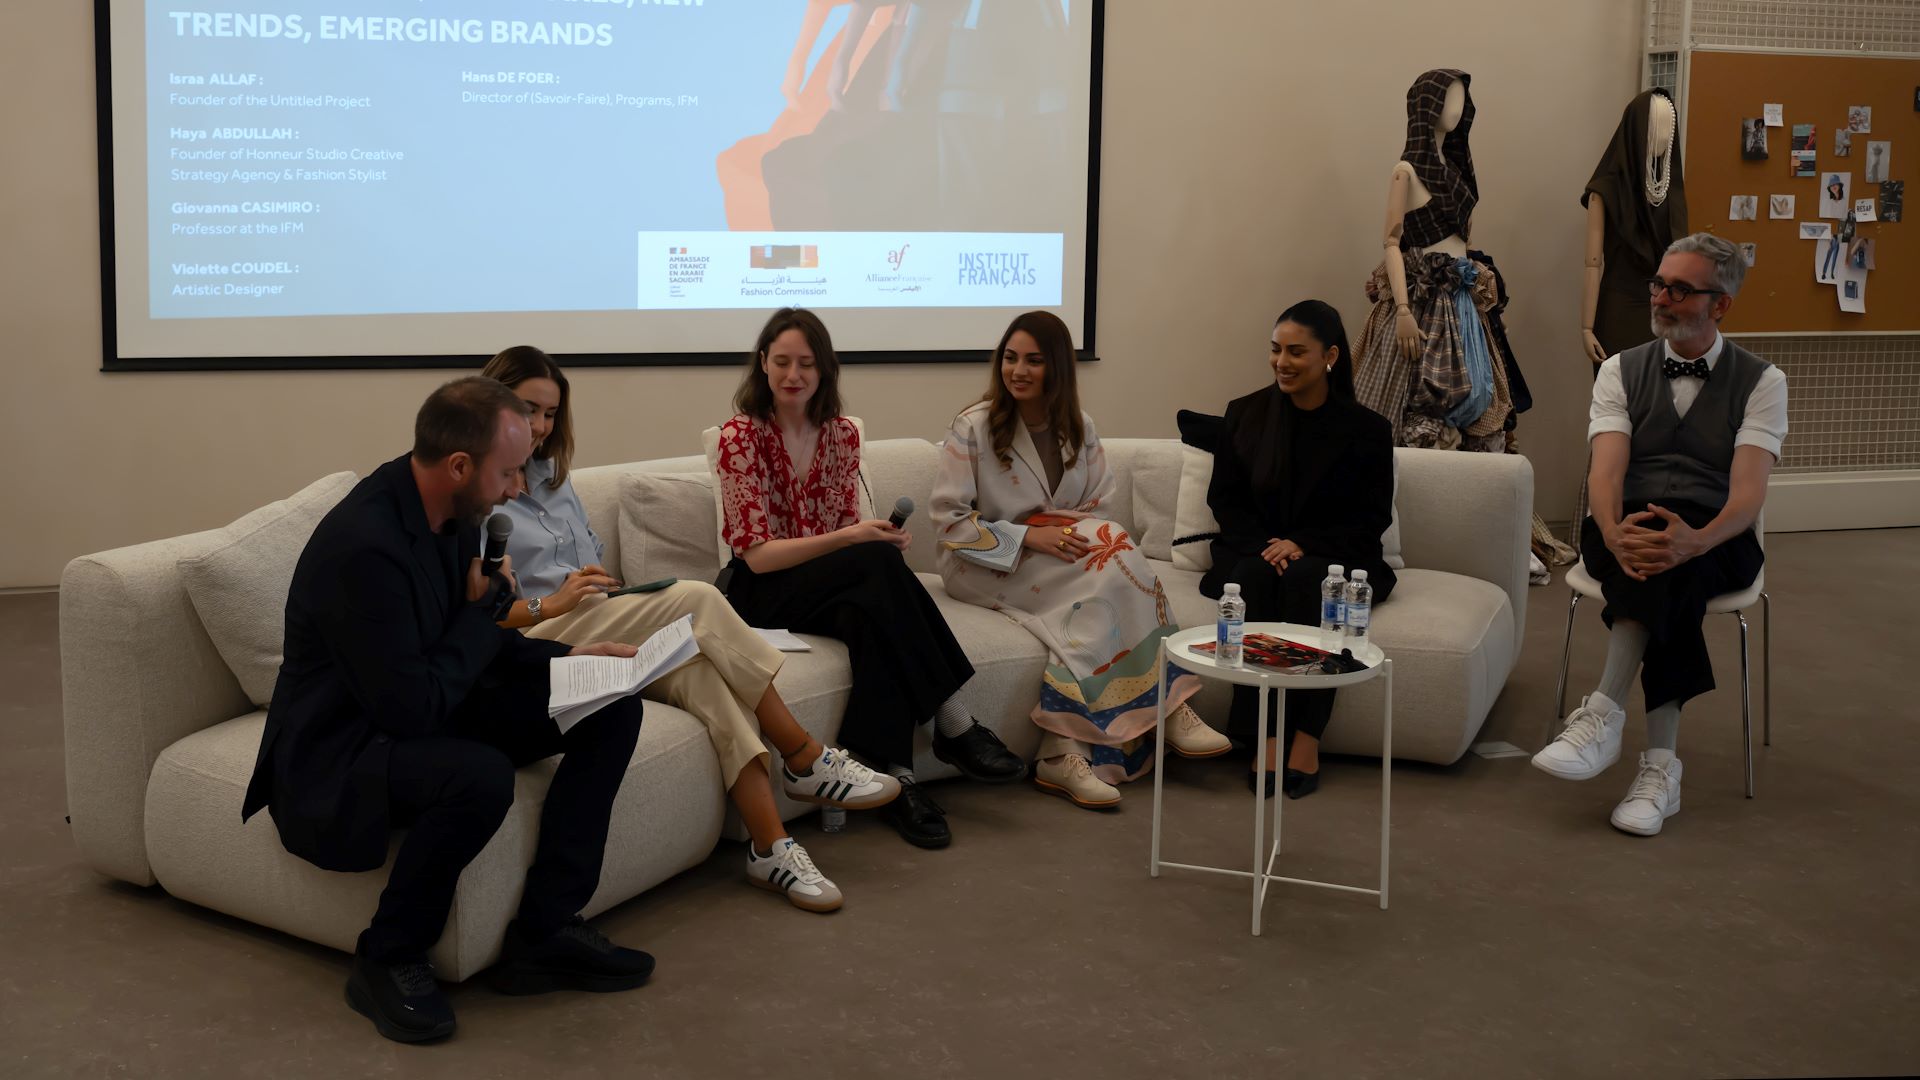 Panel Actualités de la mode, nouveaux enjeux, nouvelles tendances, marques émergentes, par Giovanna Casimiro, Professeur à l'IFM et Hans de Foer, Directeur du programme « Savoir Faire » à l'IFM.